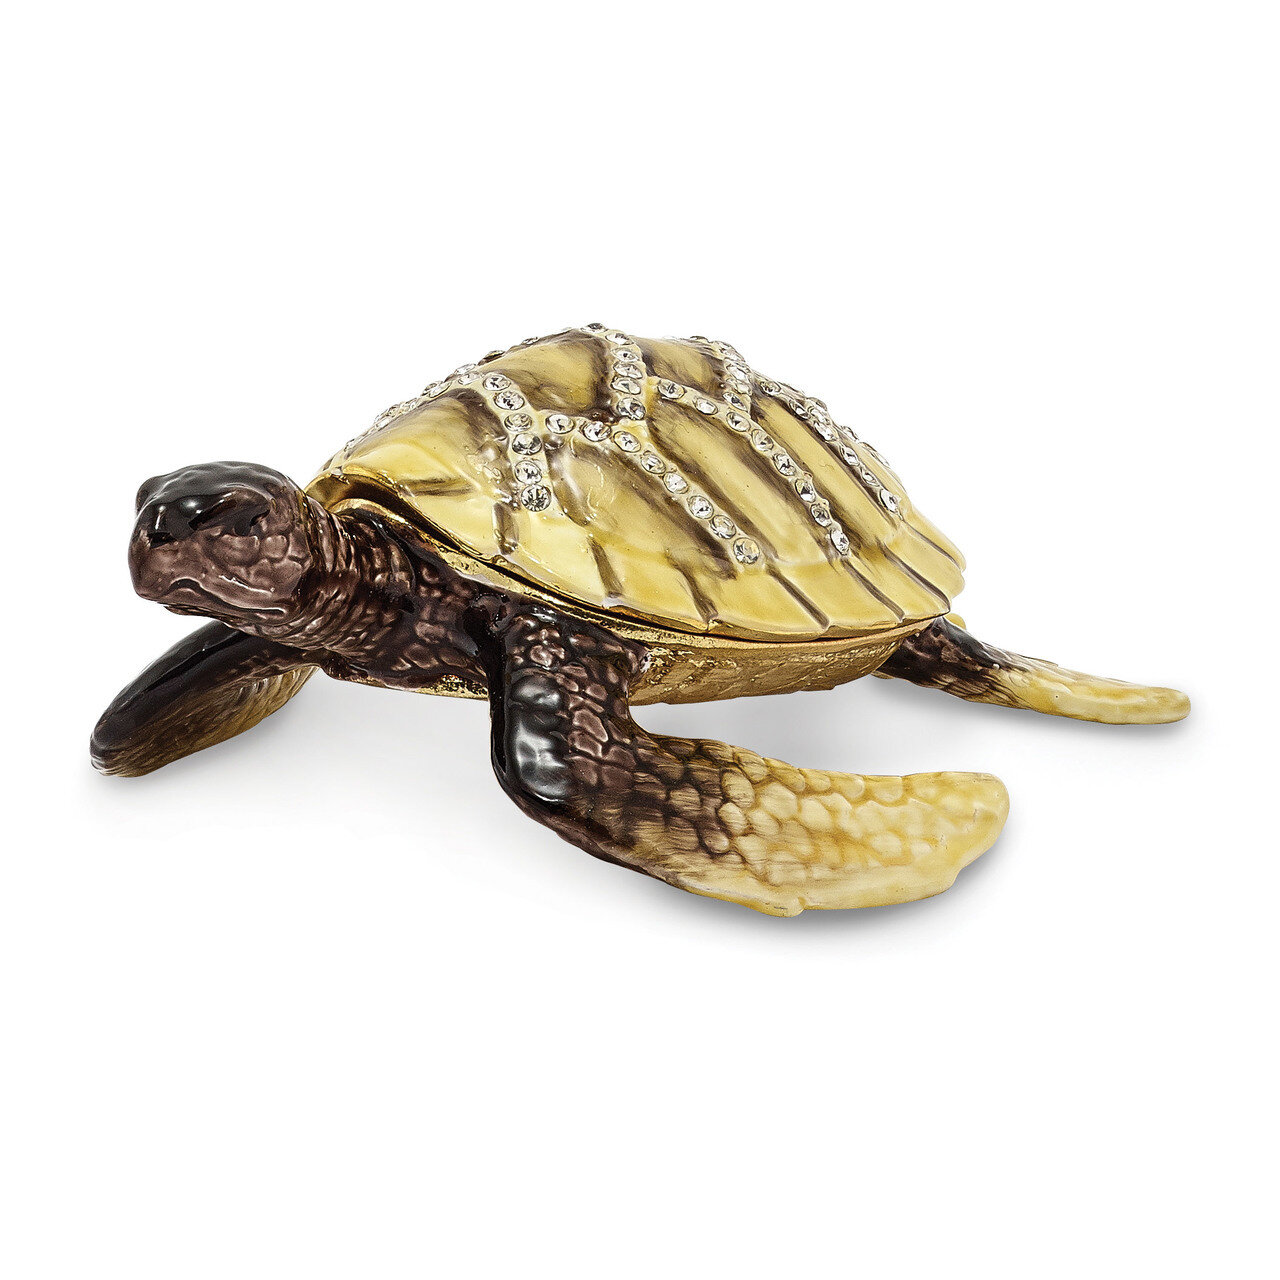 Yellow Sea Turtle Trinket Box Enamel on Pewter by Jere